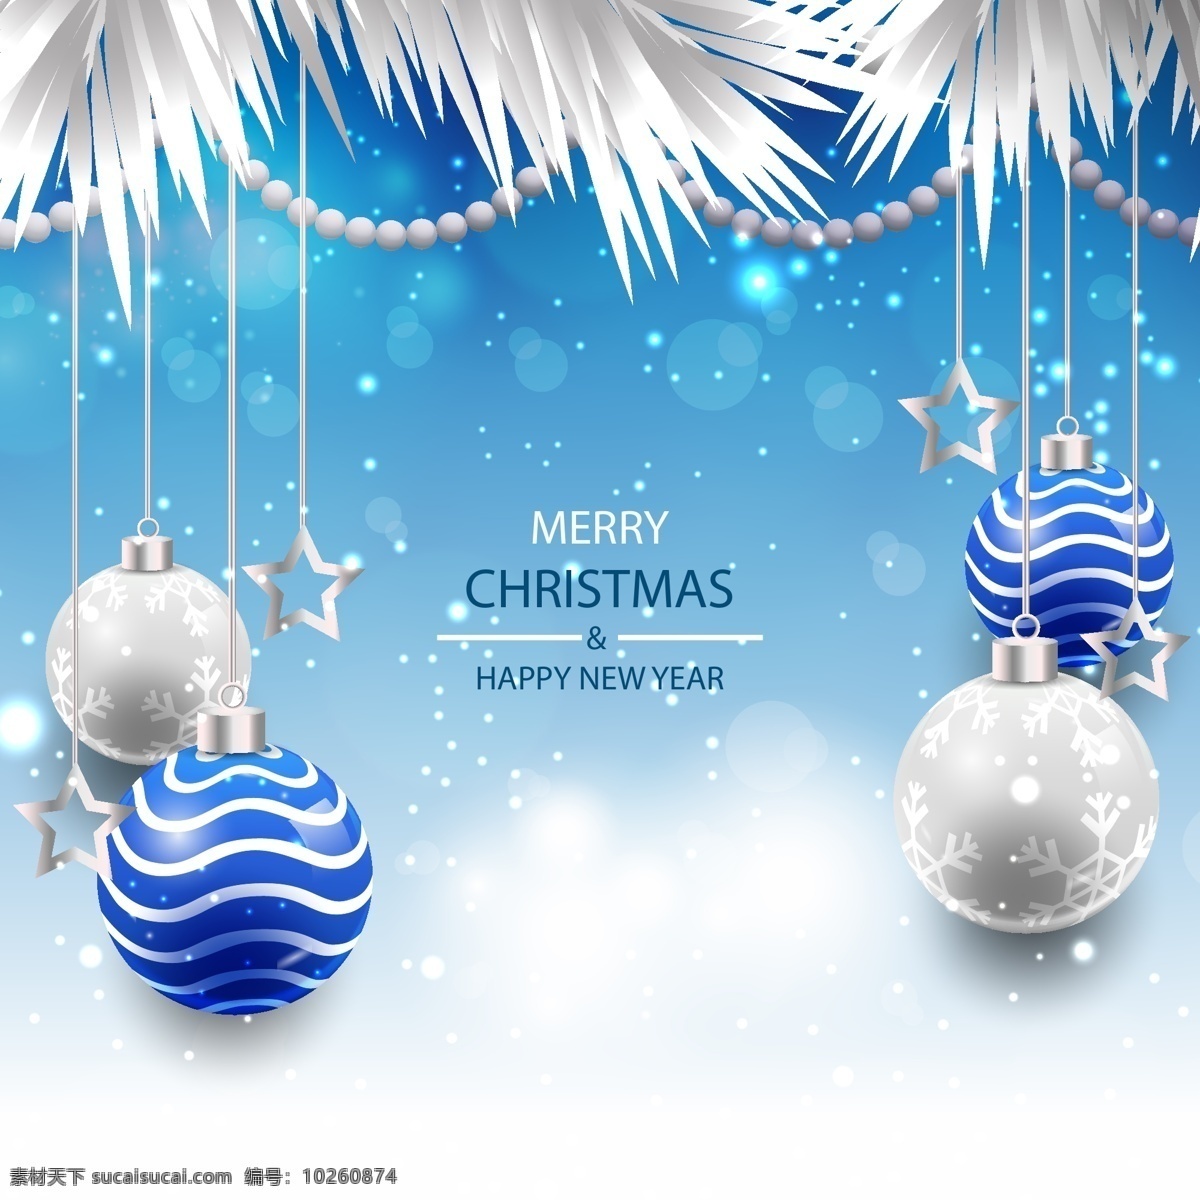 优雅 蓝色 矢量 圣诞 背景 圣诞节 节日 狂欢 卡通 圣诞背景 过节 庆祝 西方节日 假期 扁平 装饰球